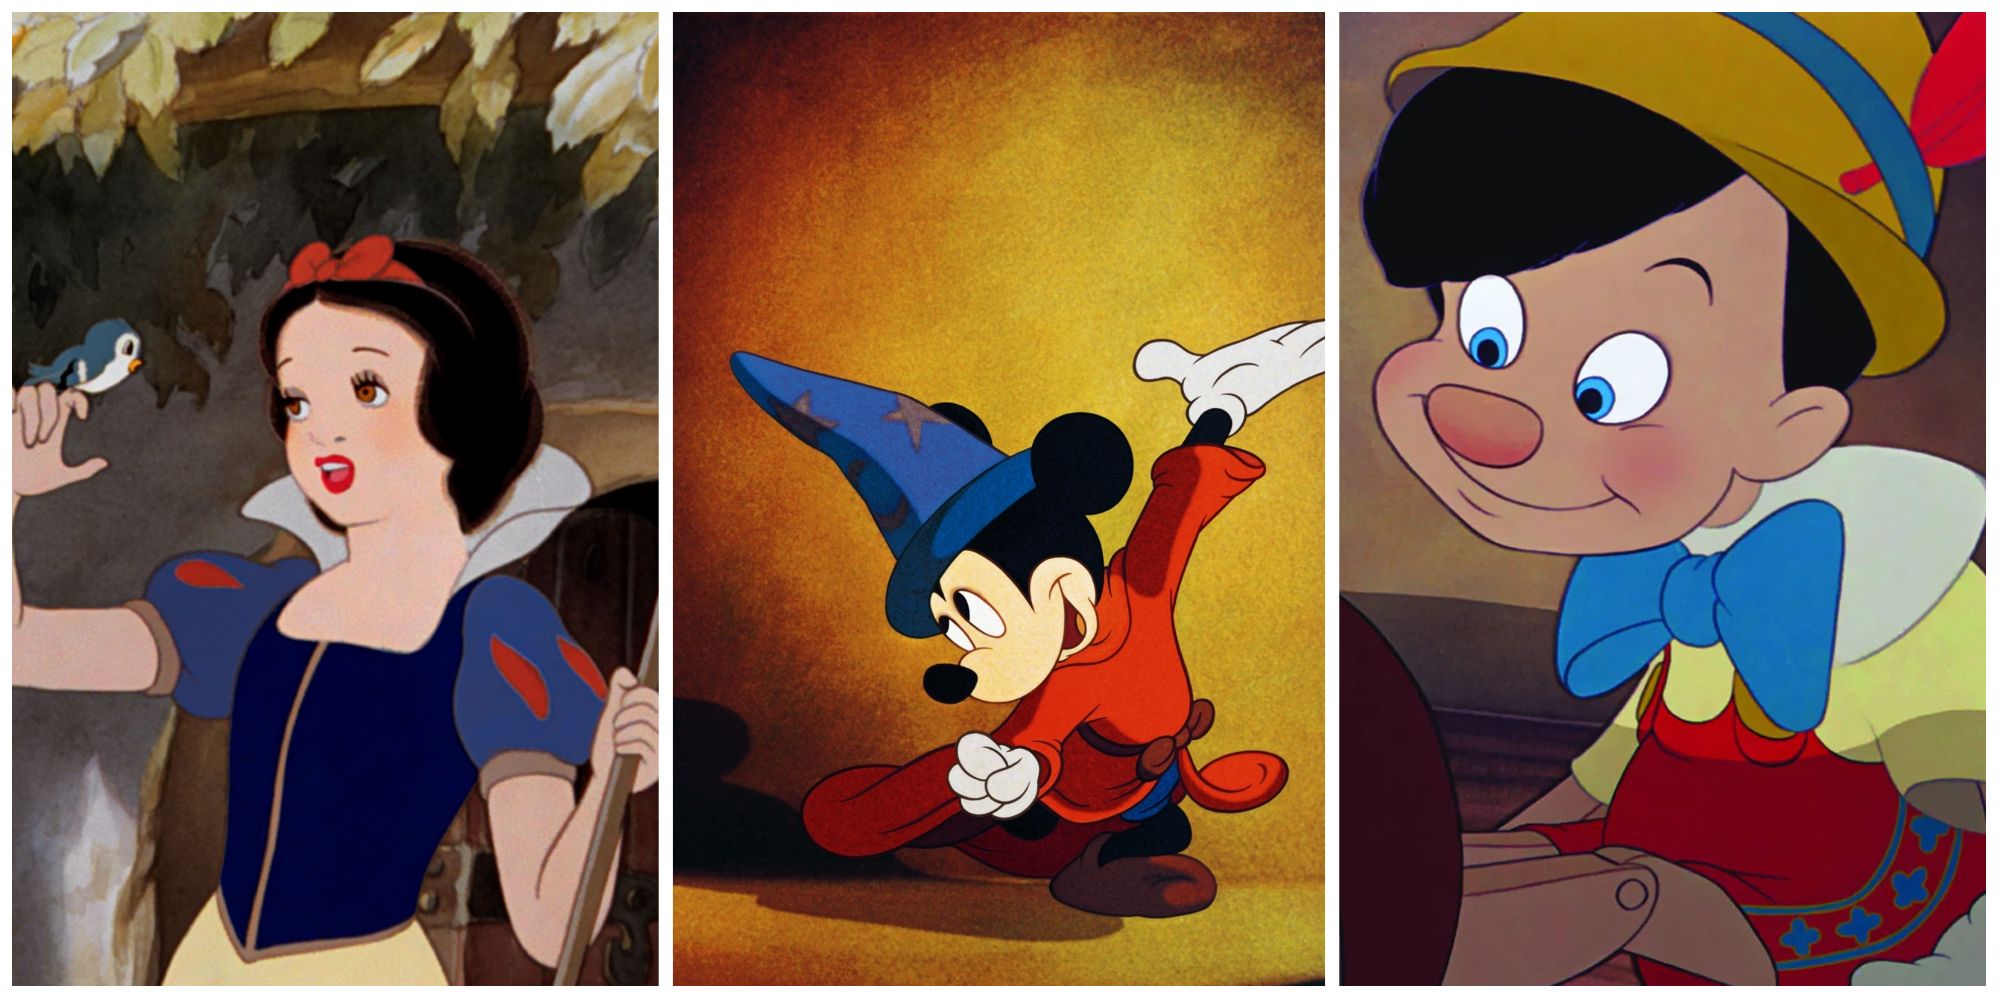 Snow White and the Seven Dwarfs, Fantasia, Pinocchio